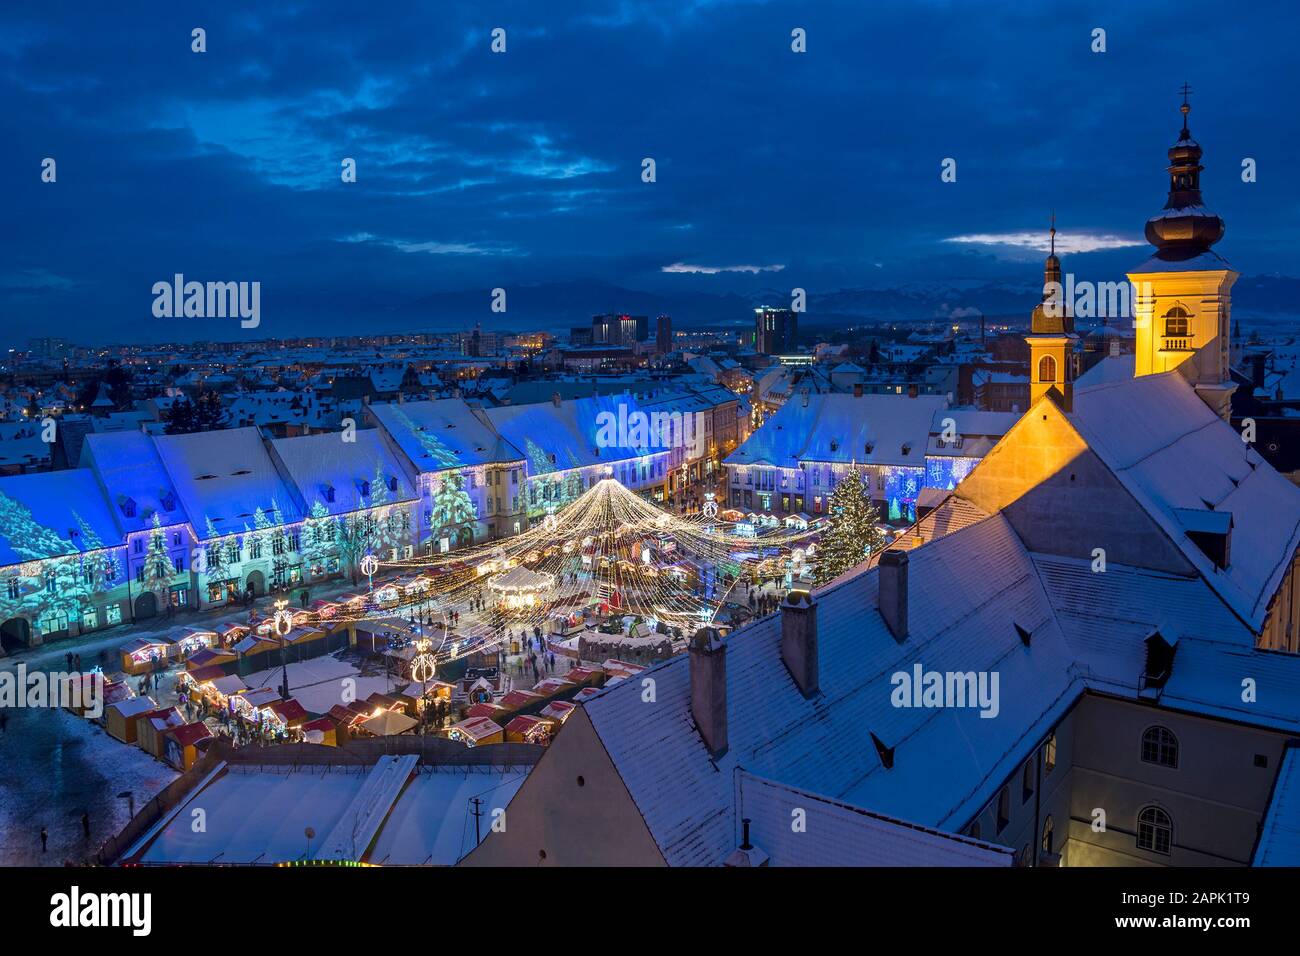 Weihnachtsmarkt und Dekorationsleuchten auf dem Hauptplatz von Sibiu, Siebenbürgen, Rumänien Stockfoto